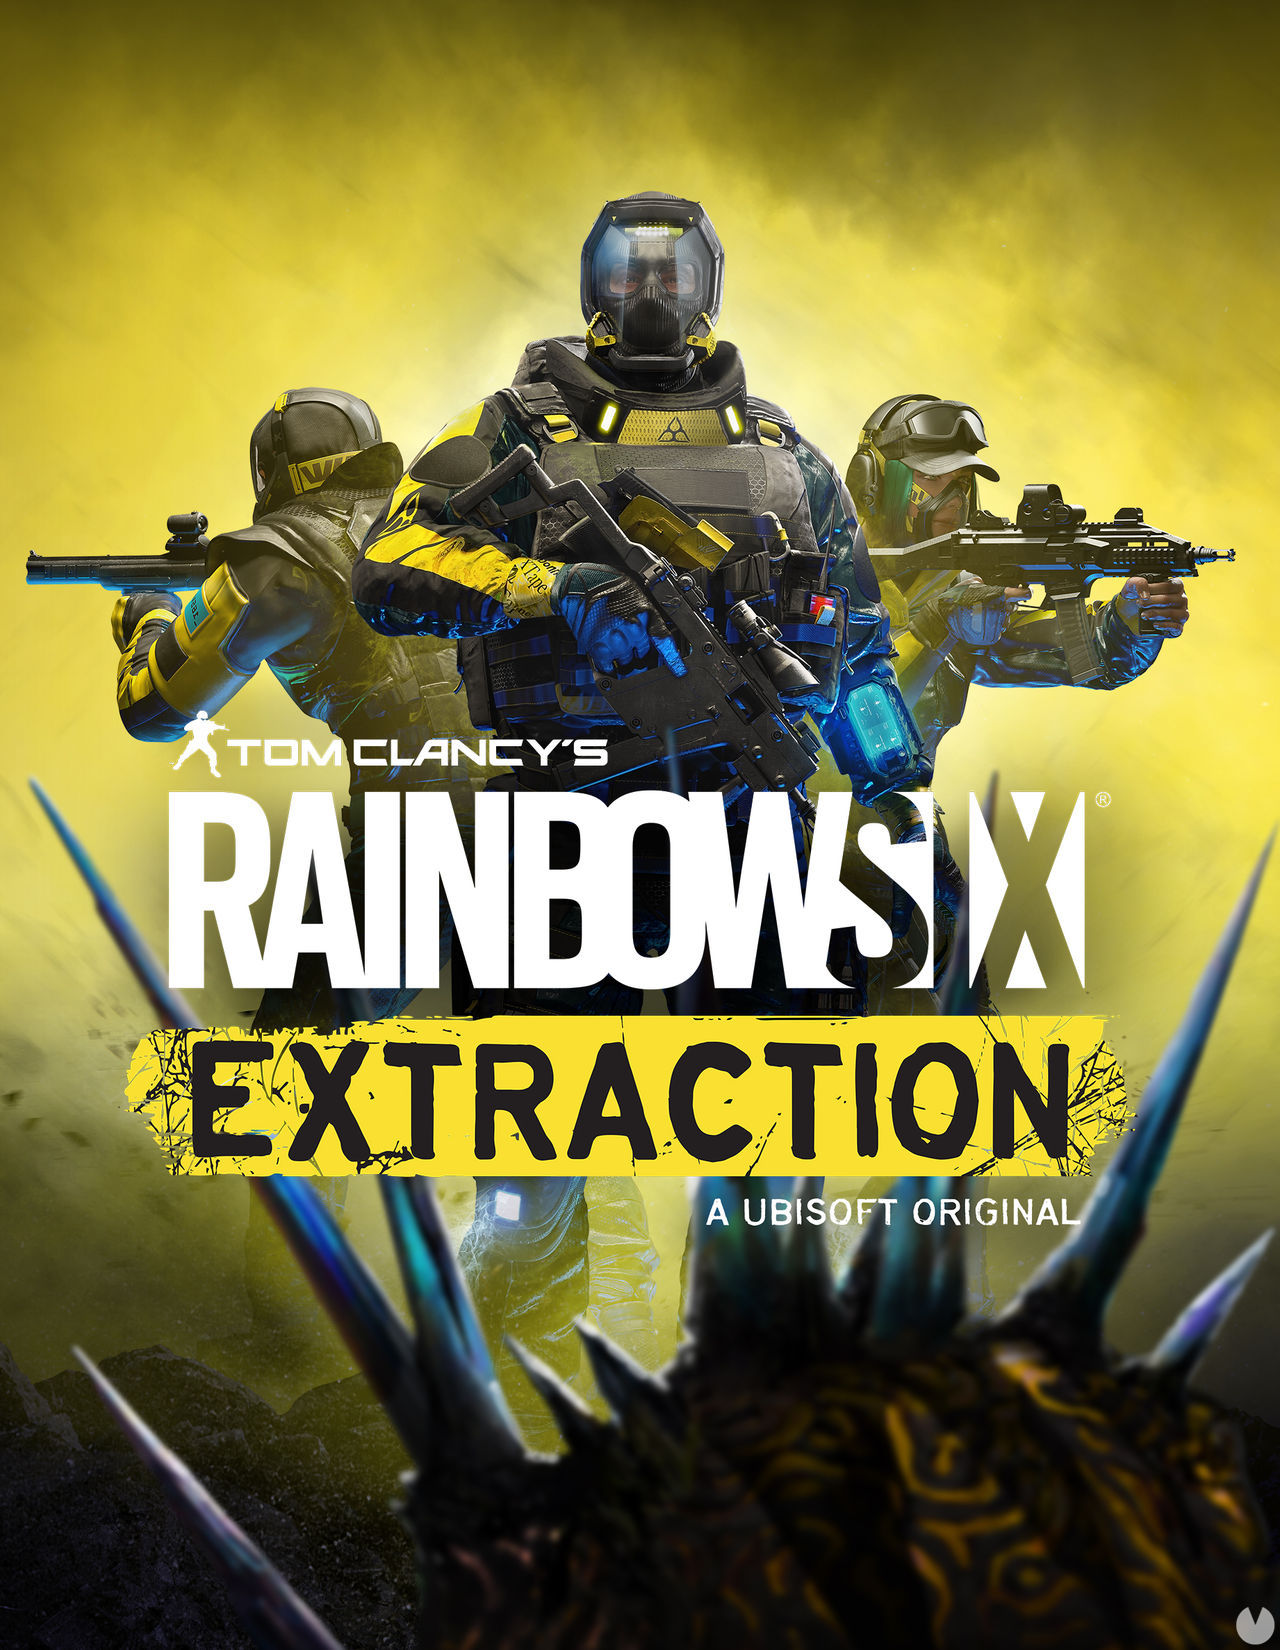 rainbow six extraction series